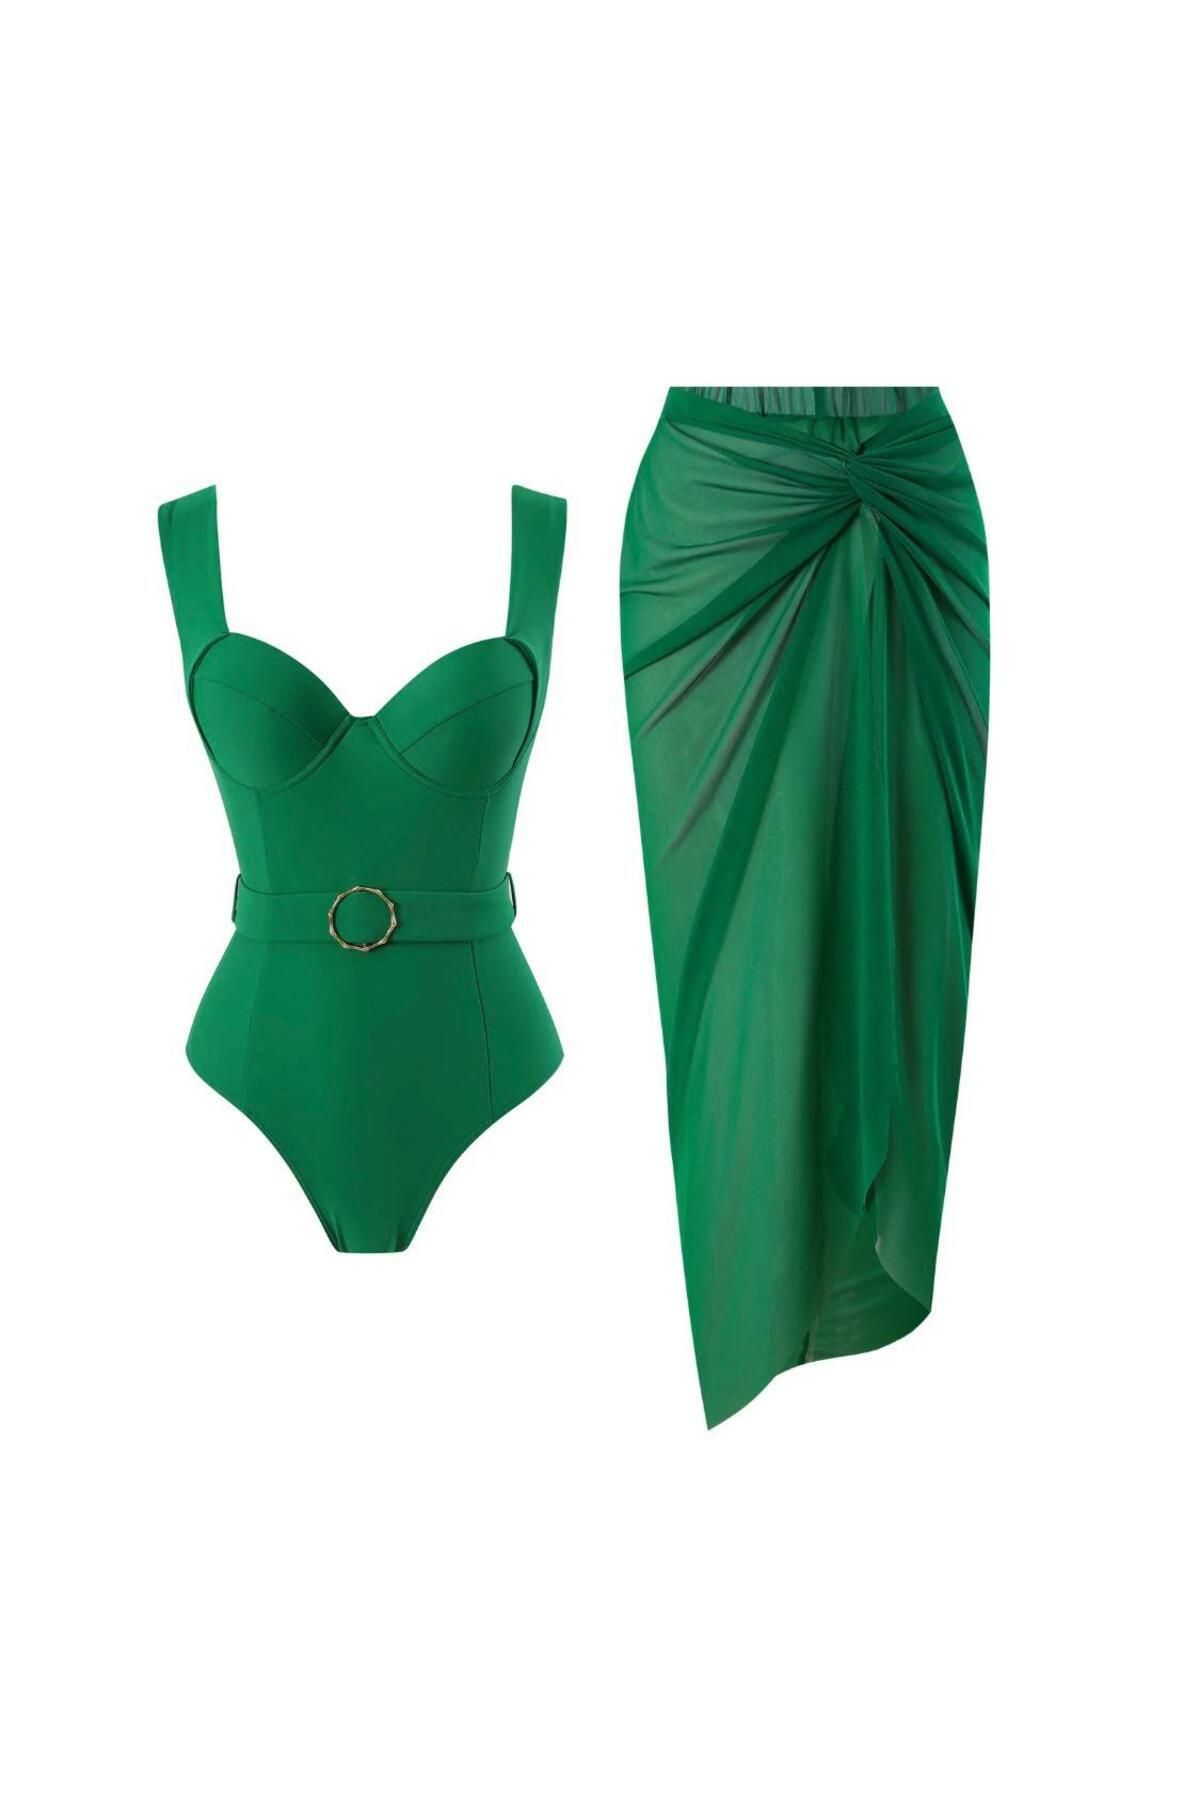 DESİGNEDBYD Yeni Kadın Mayo+pareo Etek Takım 2 Parça Up Set Bodysuit Plaj Moda Beachwear